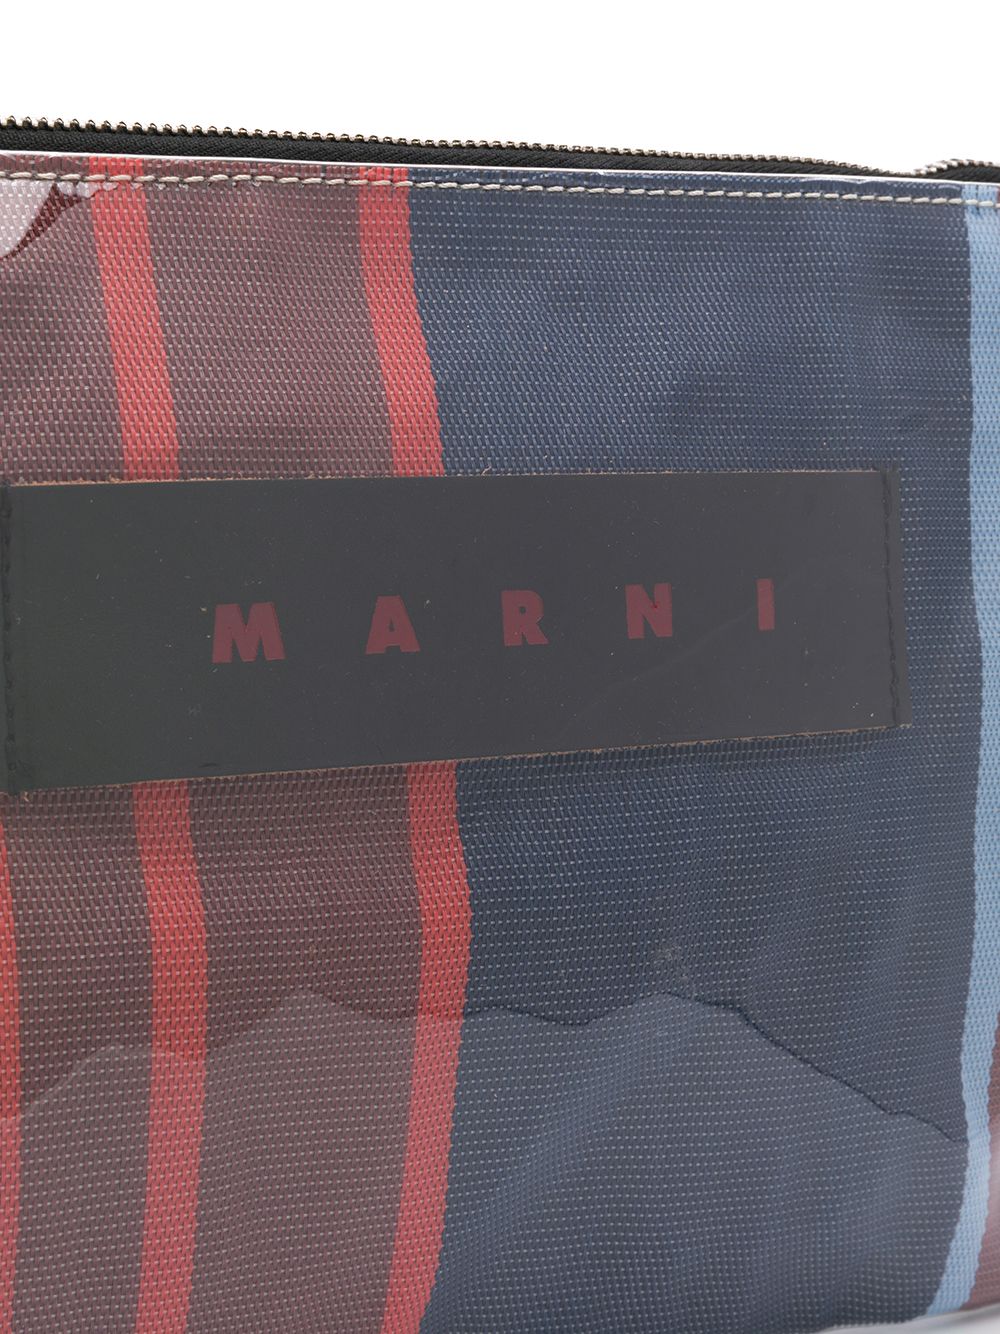 фото Marni полосатый клатч с логотипом